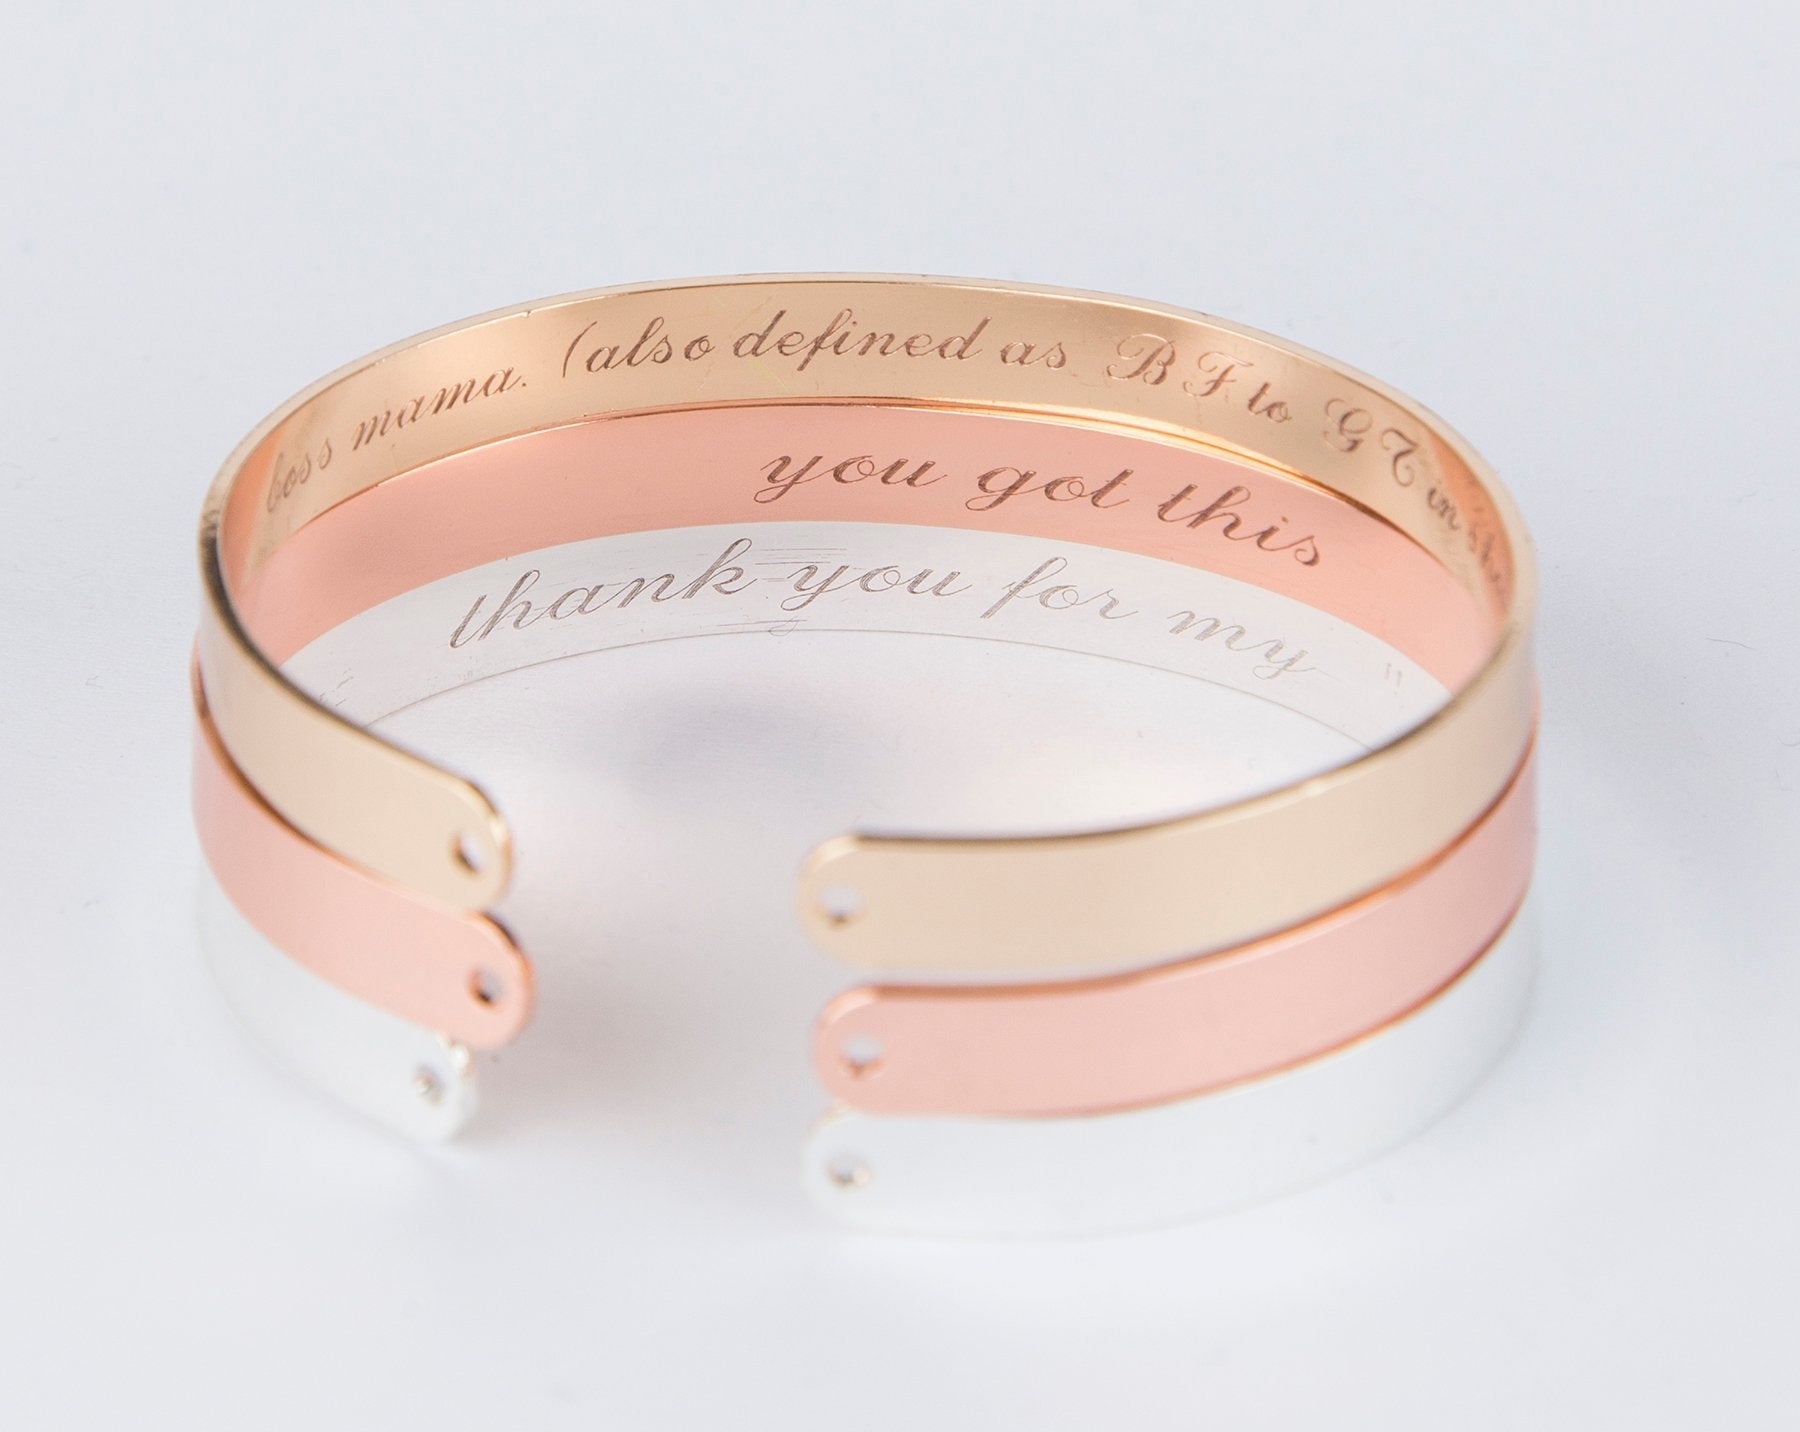 Secret Message Engraved Bracelet, Personalized Engraved Gift Inside